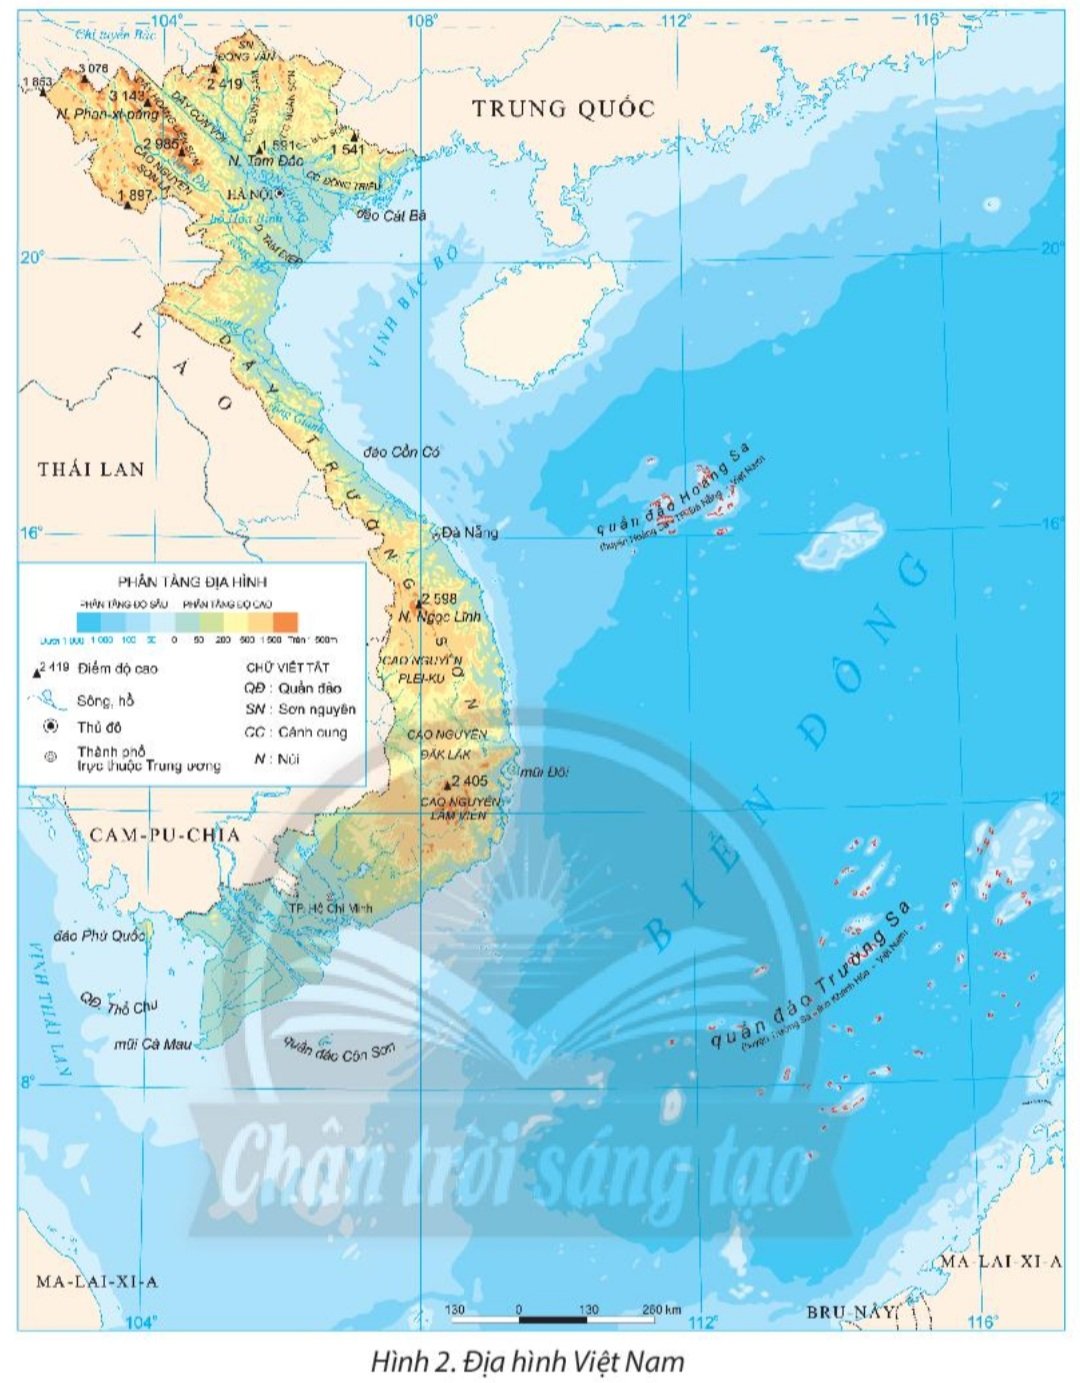 Học phương pháp sử dụng bản đồ địa lý Việt Nam sẽ giúp ích rất nhiều cho công việc của bạn, đặc biệt là những ai đang làm trong lĩnh vực trường học, ngành du lịch hoặc thăm dò tài nguyên. Với các kỹ năng mới và hiệu quả, bạn sẽ tiết kiệm thời gian và công sức hơn.